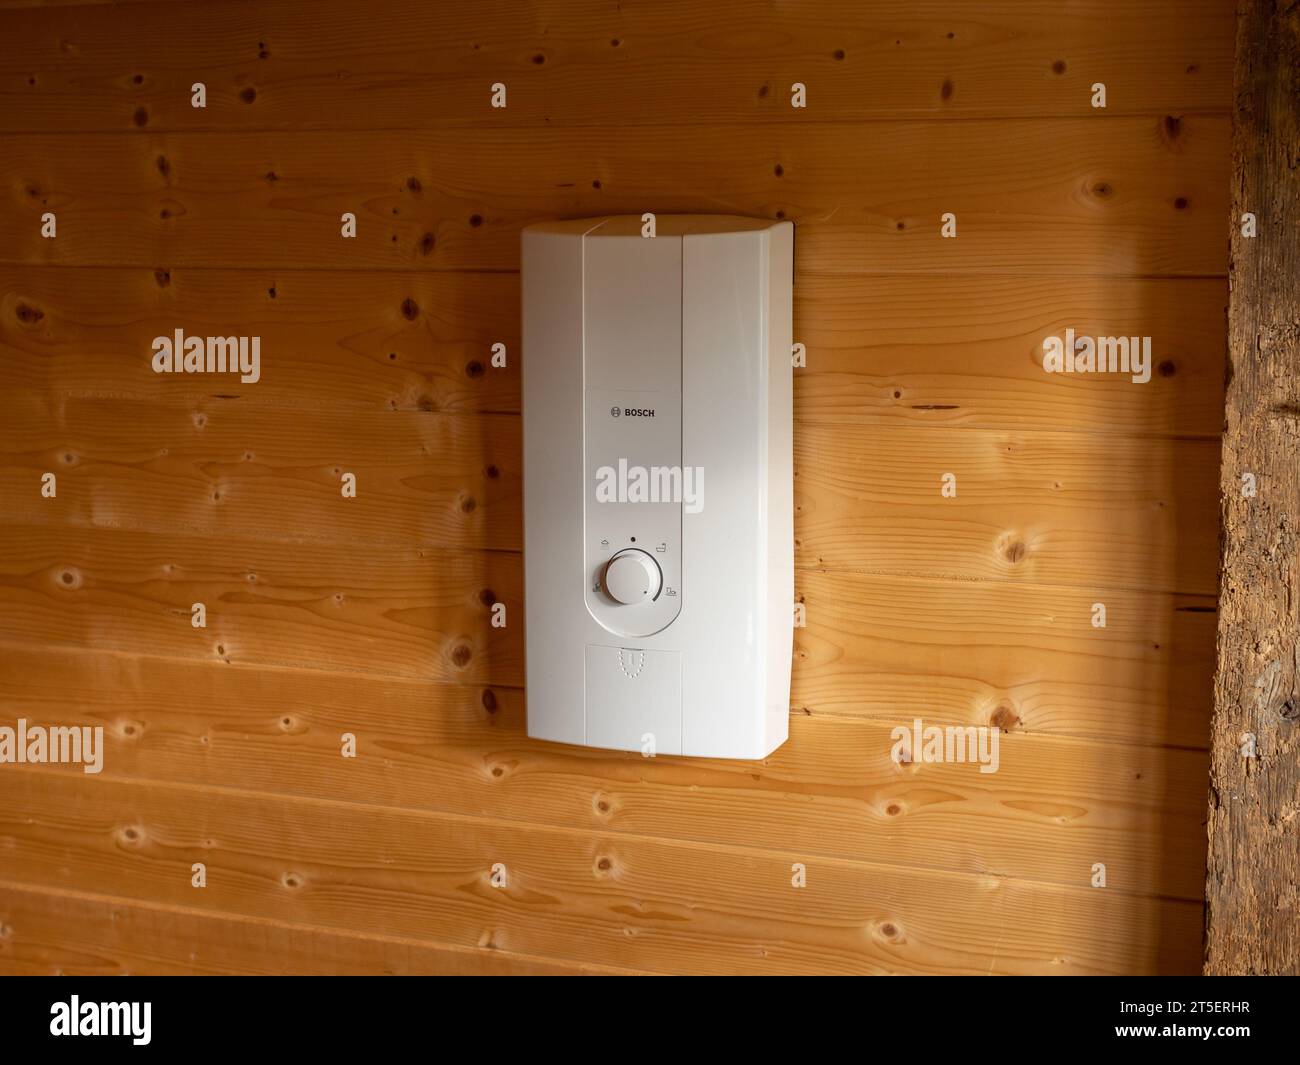 Calentador de agua Bosch en una pared interior de madera. Calentador de flujo eléctrico para obtener agua caliente para ducharse en una casa pequeña sin una caldera. Foto de stock